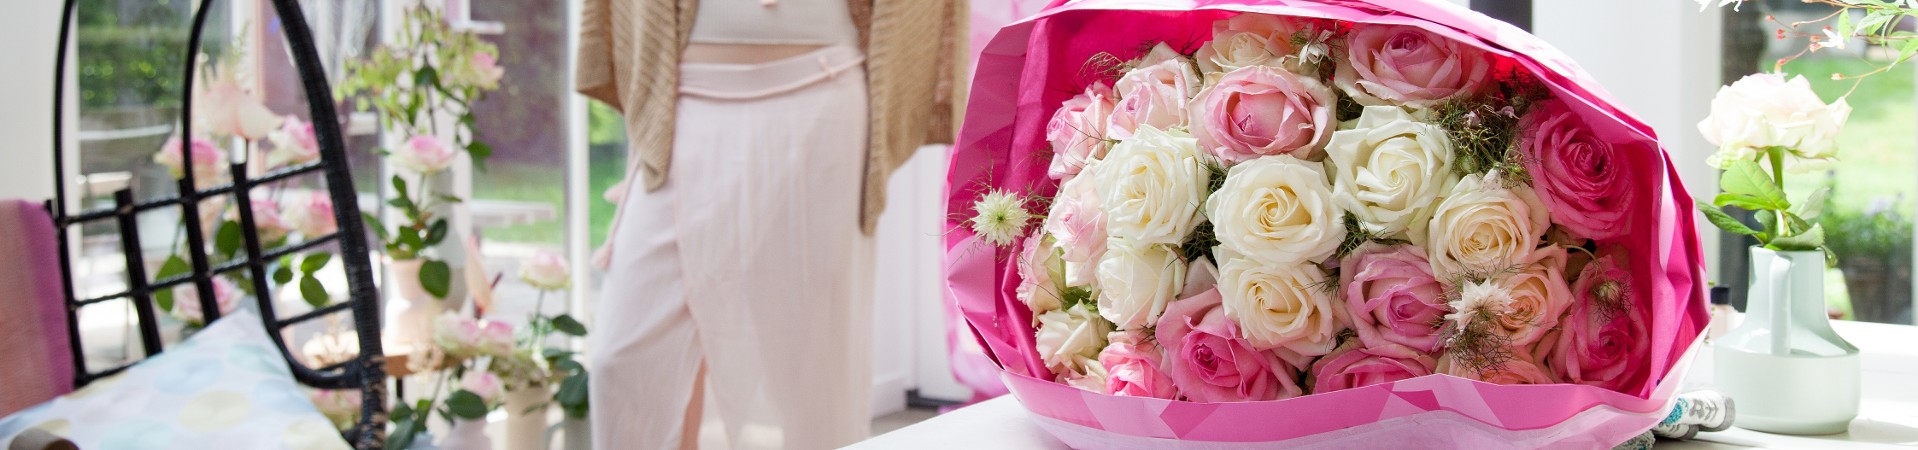 Oltre 8000 rose Avalanche+® per la festa di Kris Jenner ispirata al Grande Gatsby